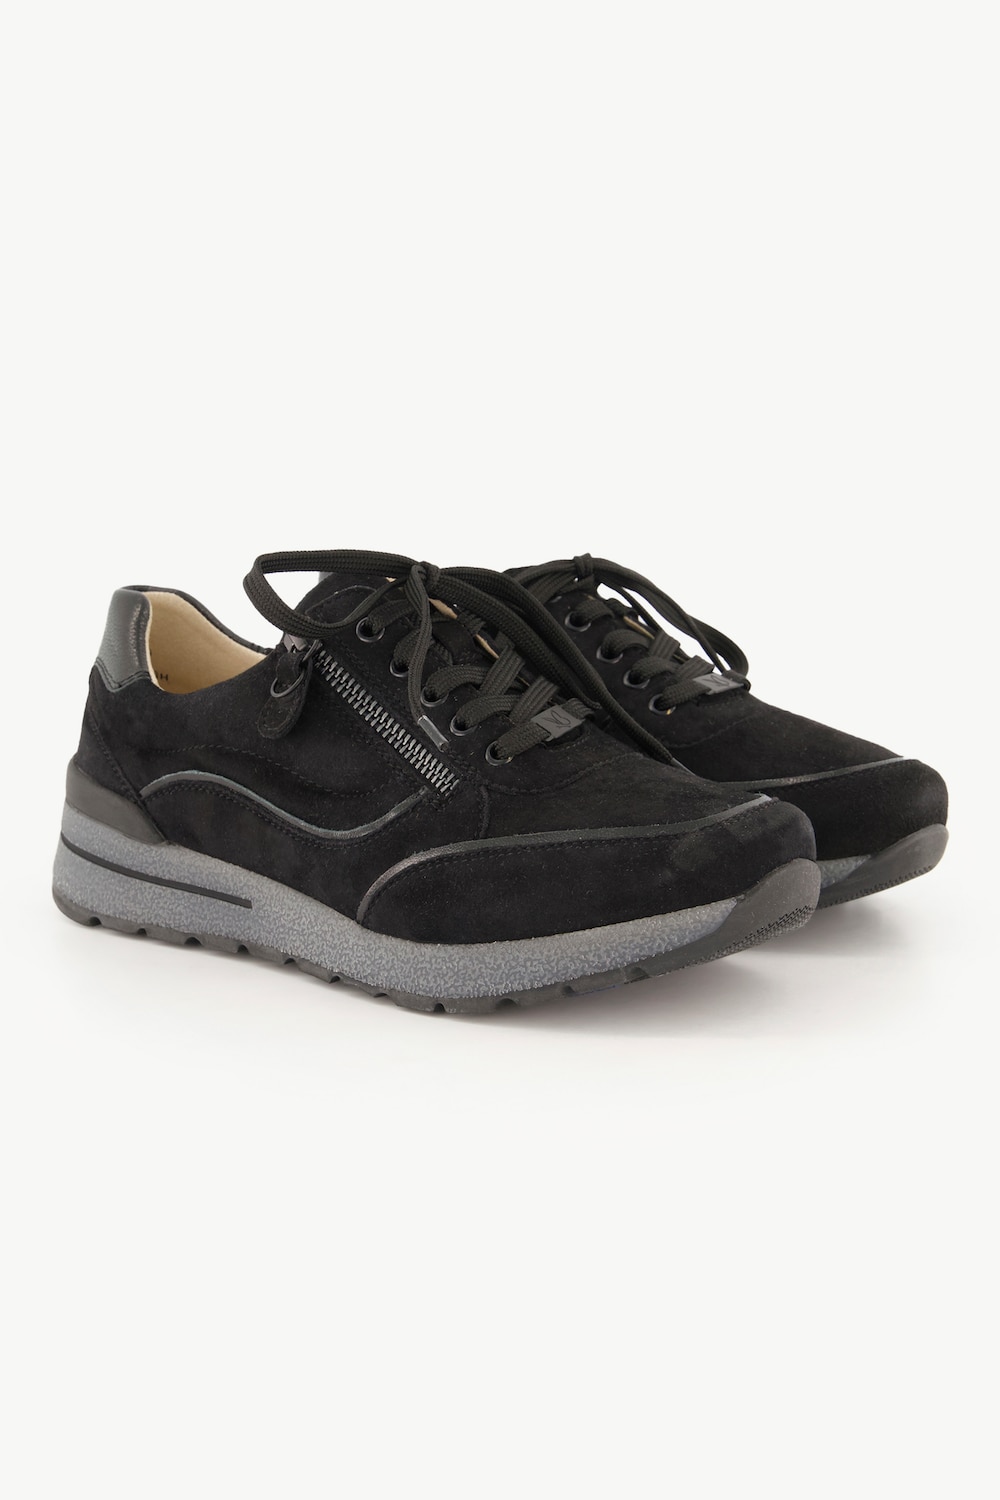 Caprice Leder-Sneaker, Damen, schwarz, Größe: 39, Leder/Synthetische Fasern, Ulla Popken von Ulla Popken